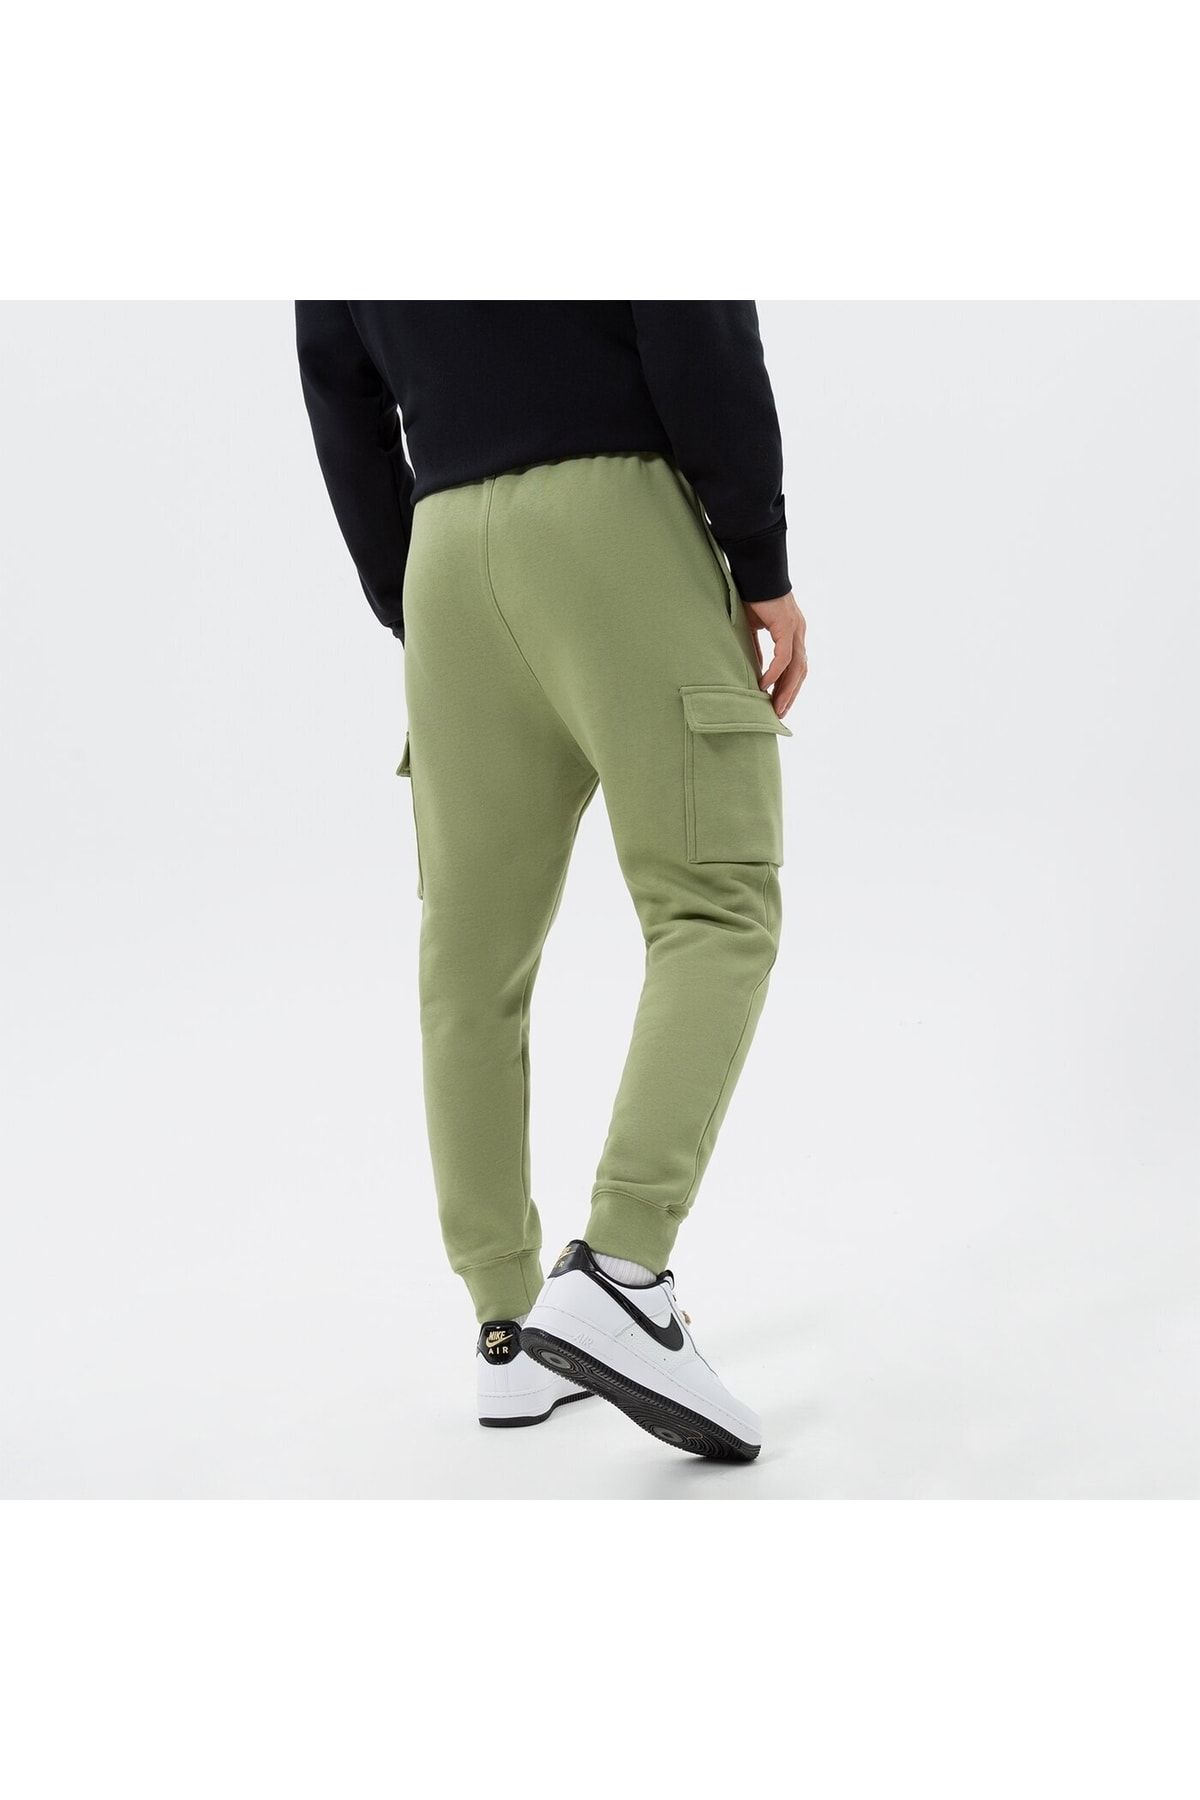 Nike Sportswear Club Fleece Men s Cargo Pants 